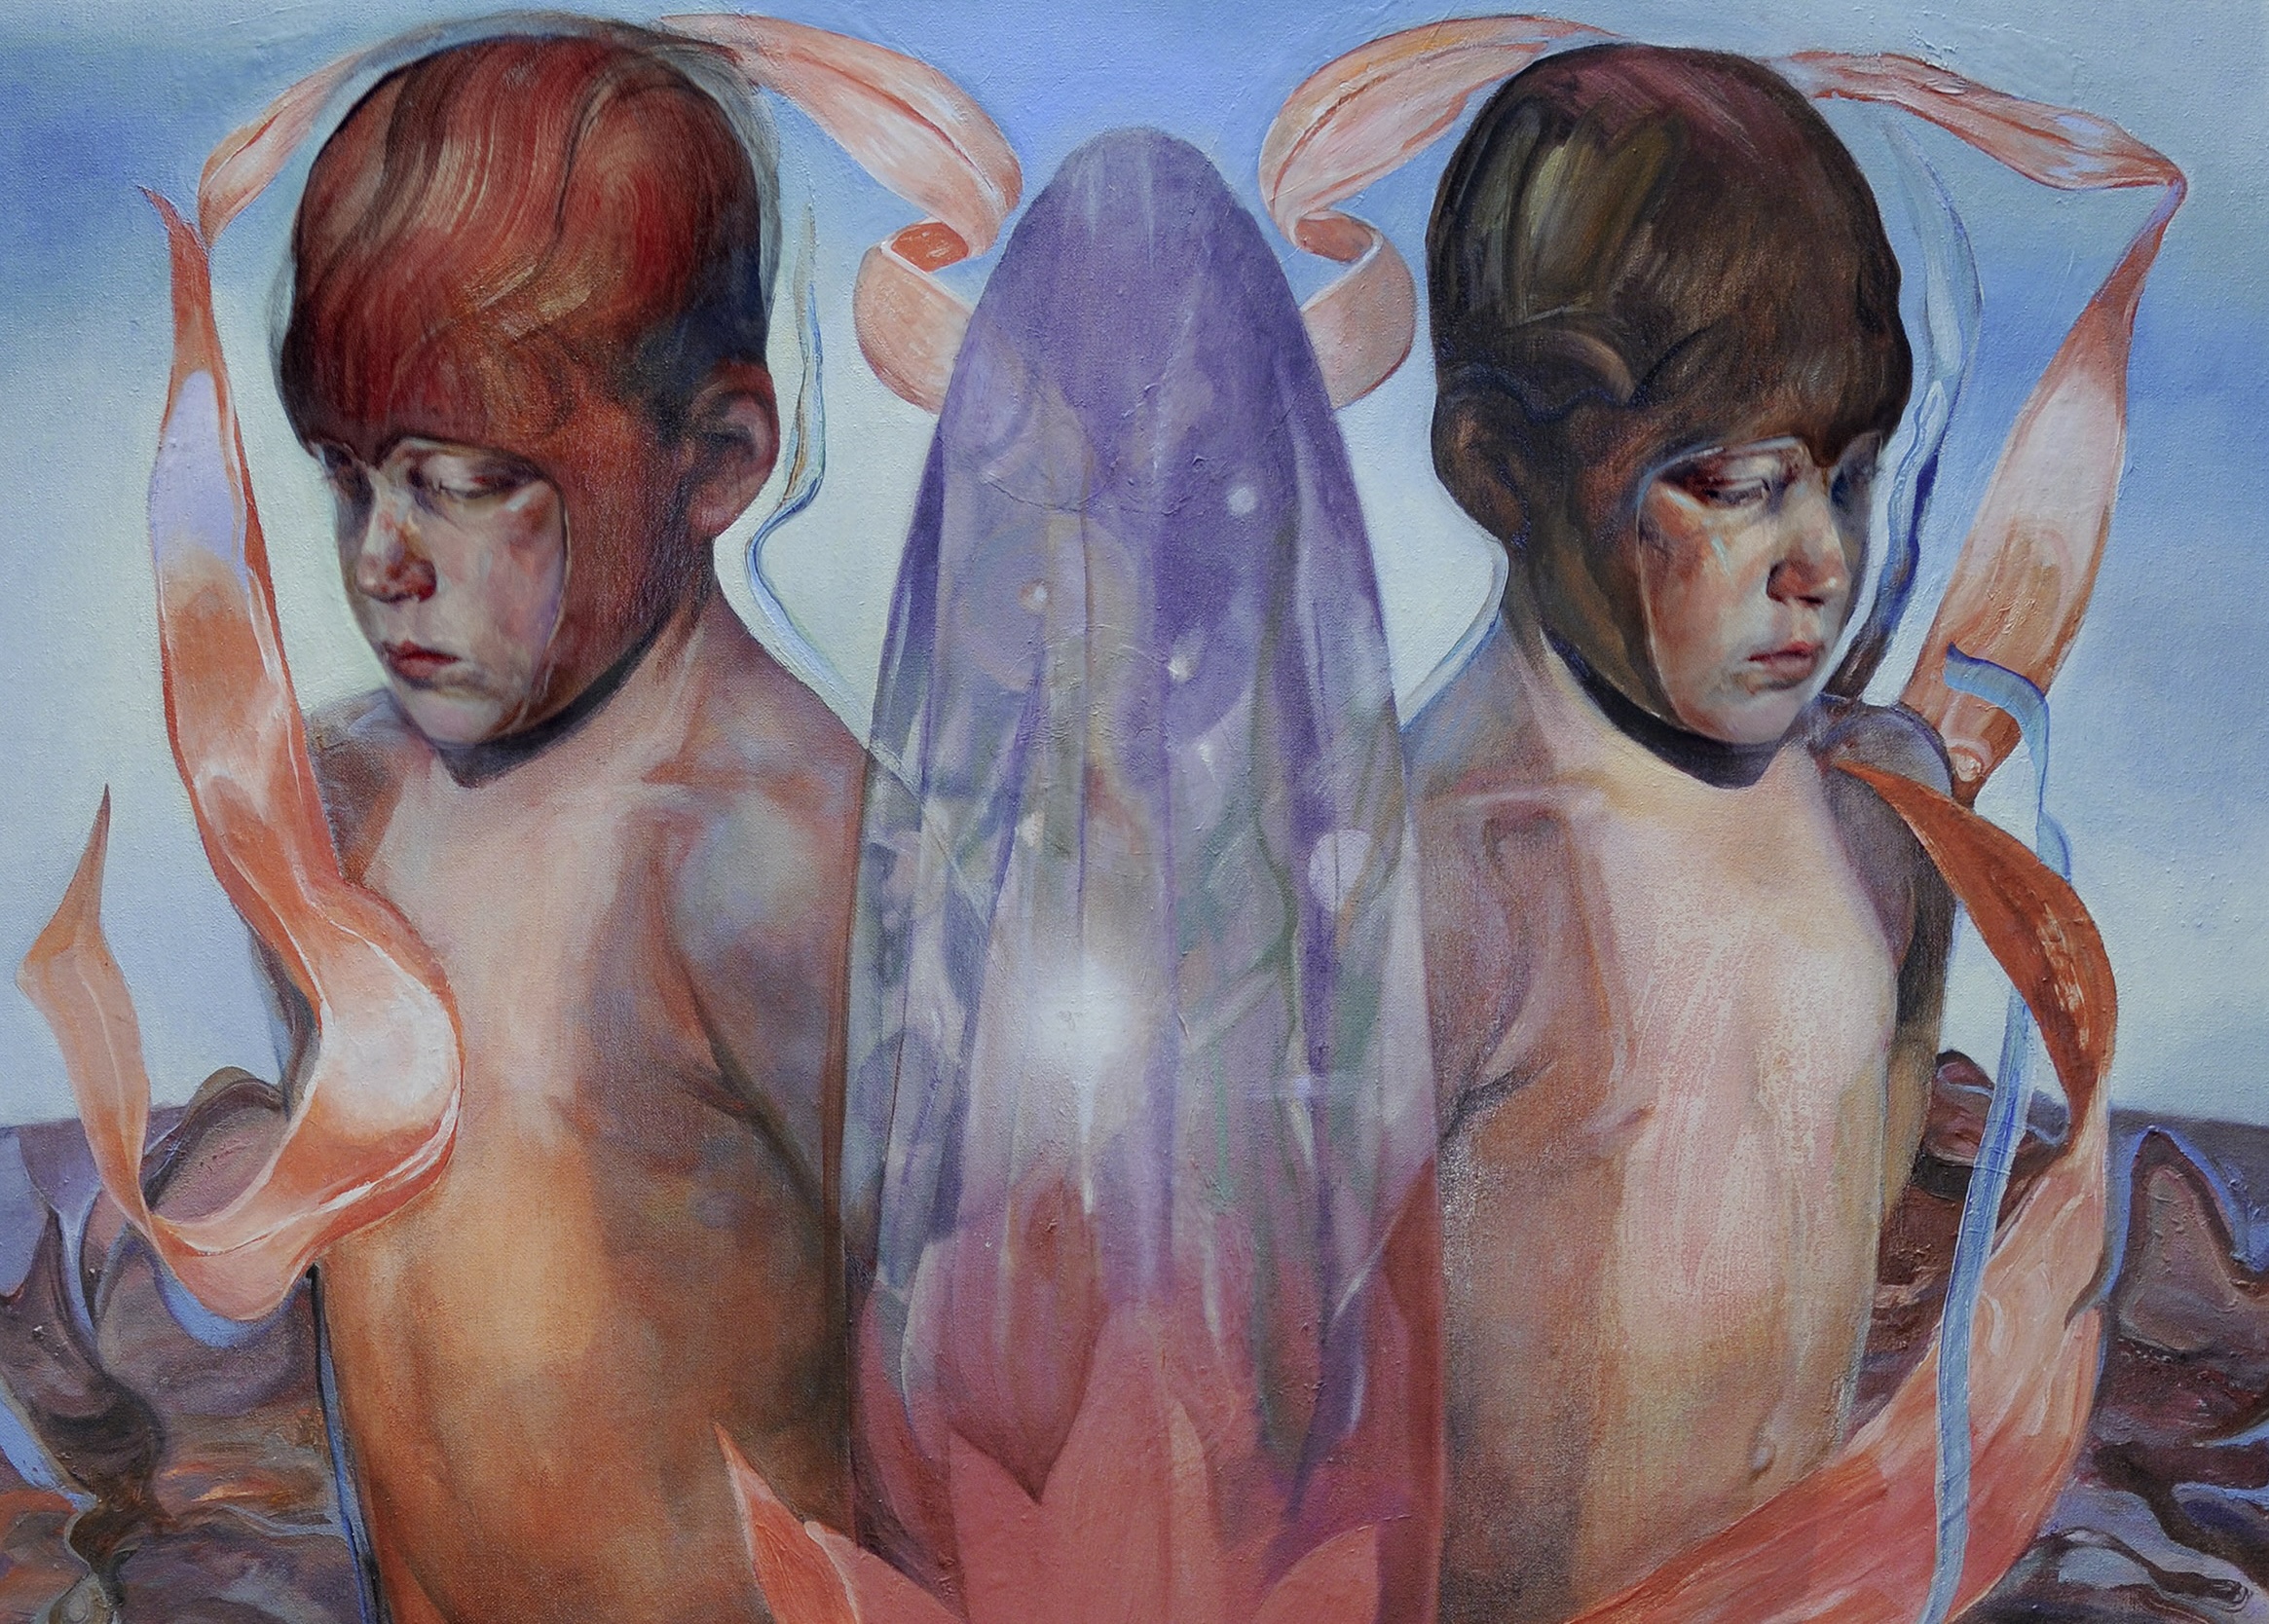 Das Bild in Blau- und Orangetönen zeigt unter anderem zwei nackte Jungen, vermutlich gespiegelt